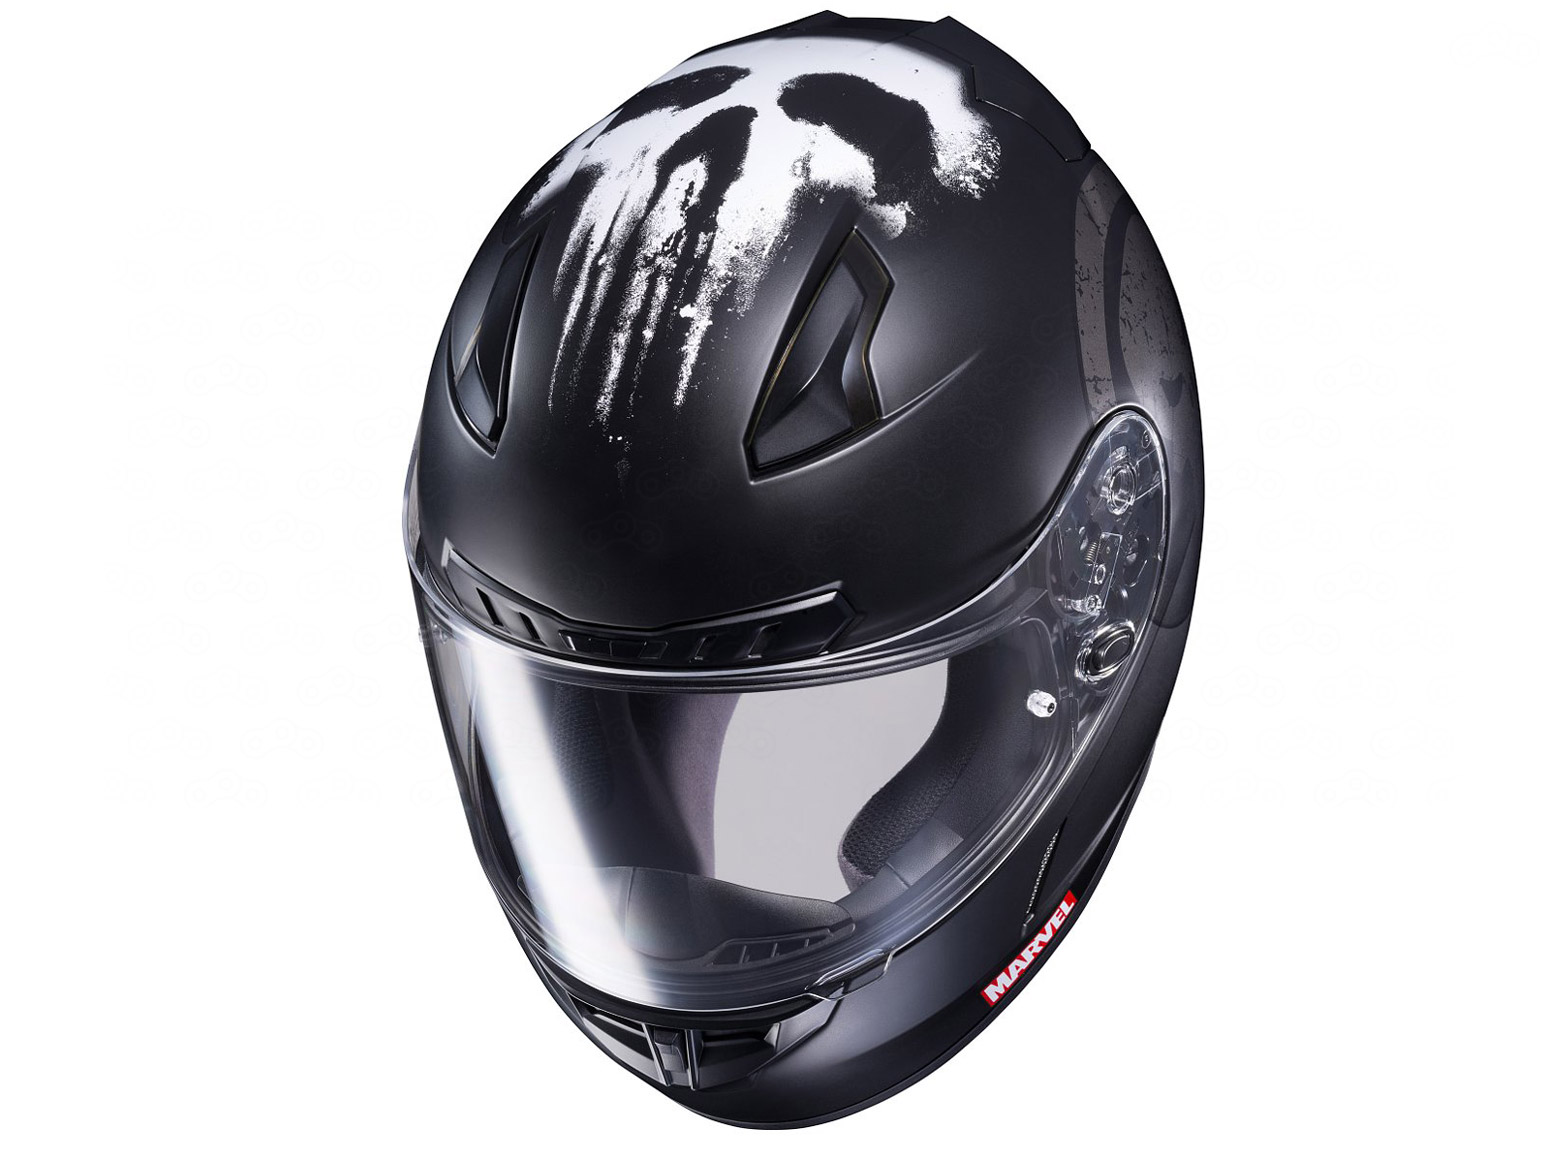 Технические характеристики шлема HJC i70: